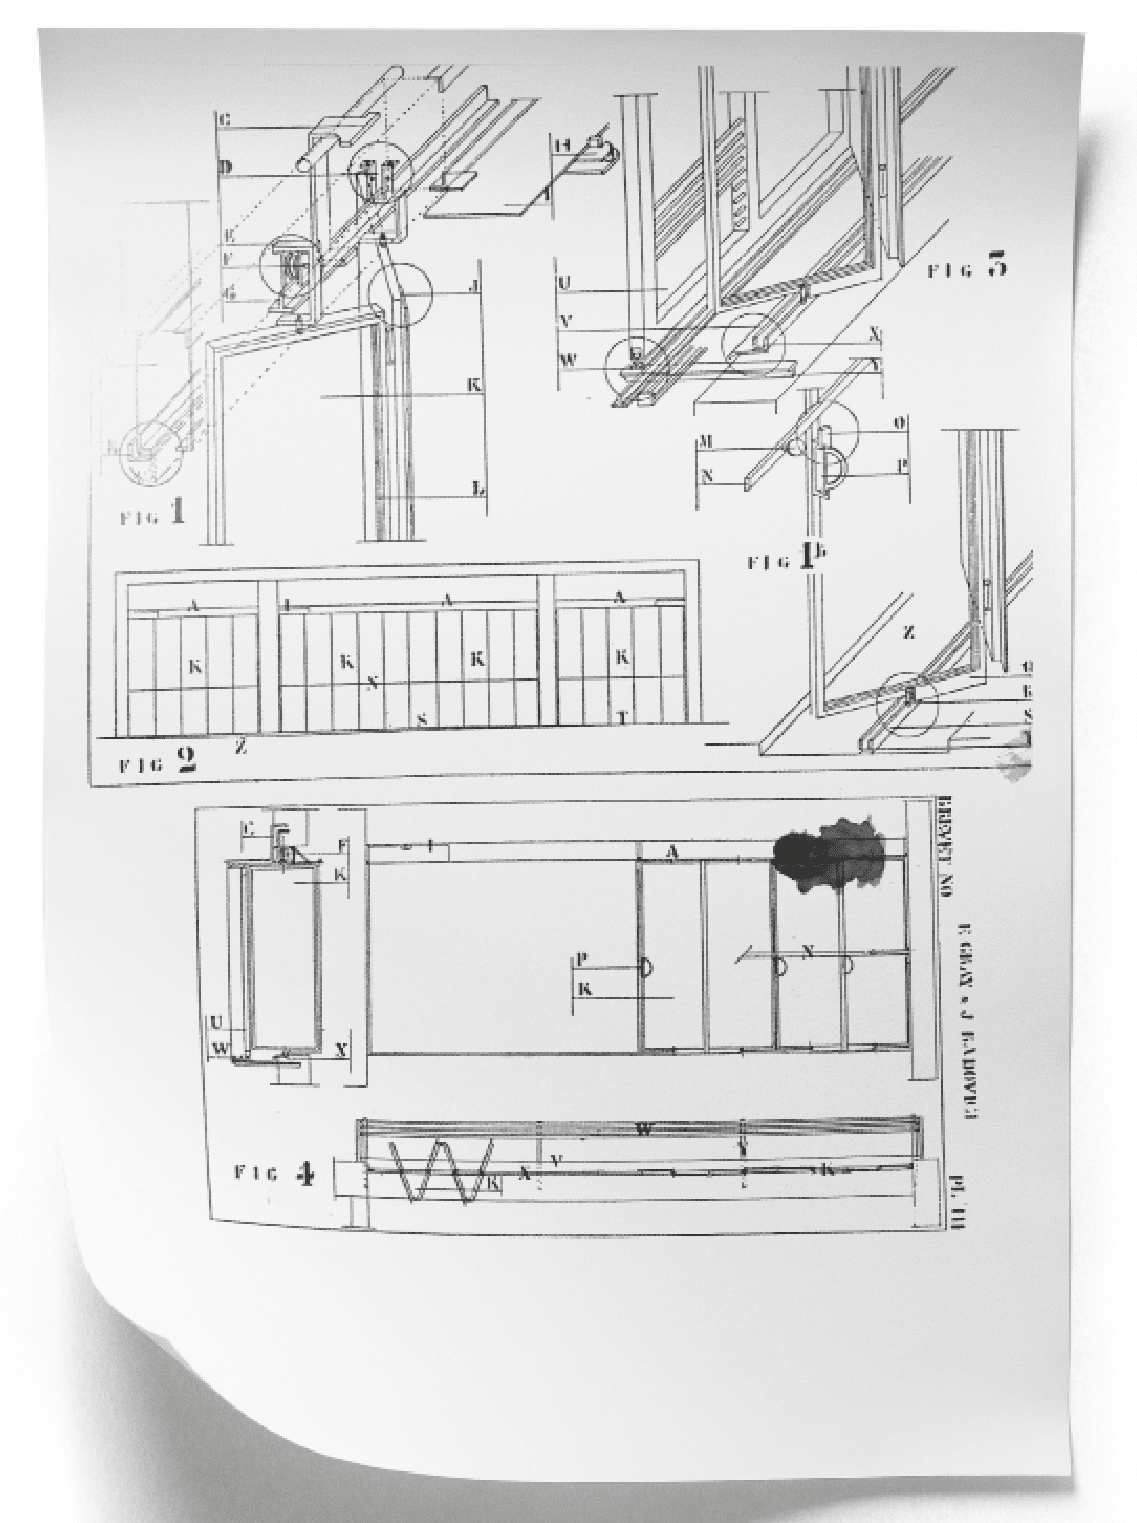 Axonometrie, Aufriss und Grundriss der Fenster. Zeichnung aus: L’Architecture Vivante, Winter 1929. DR/Eileen Gray Archives, National Museum of Ireland, Dublin